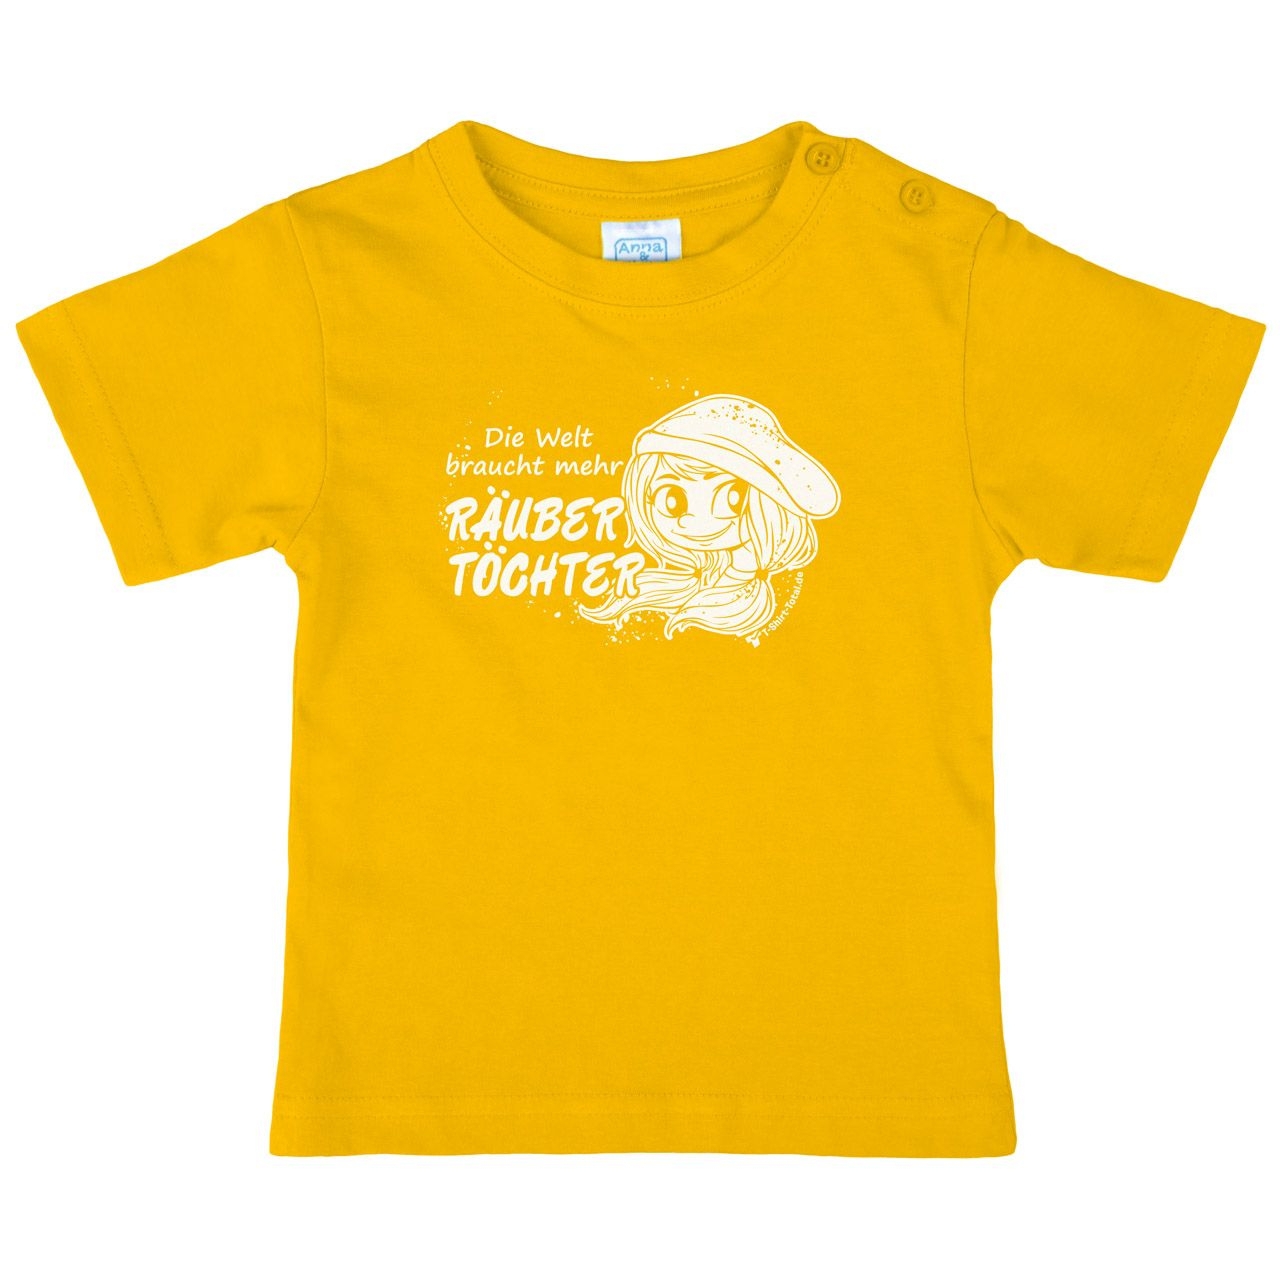 Räubertöchter Kinder T-Shirt gelb 110 / 116